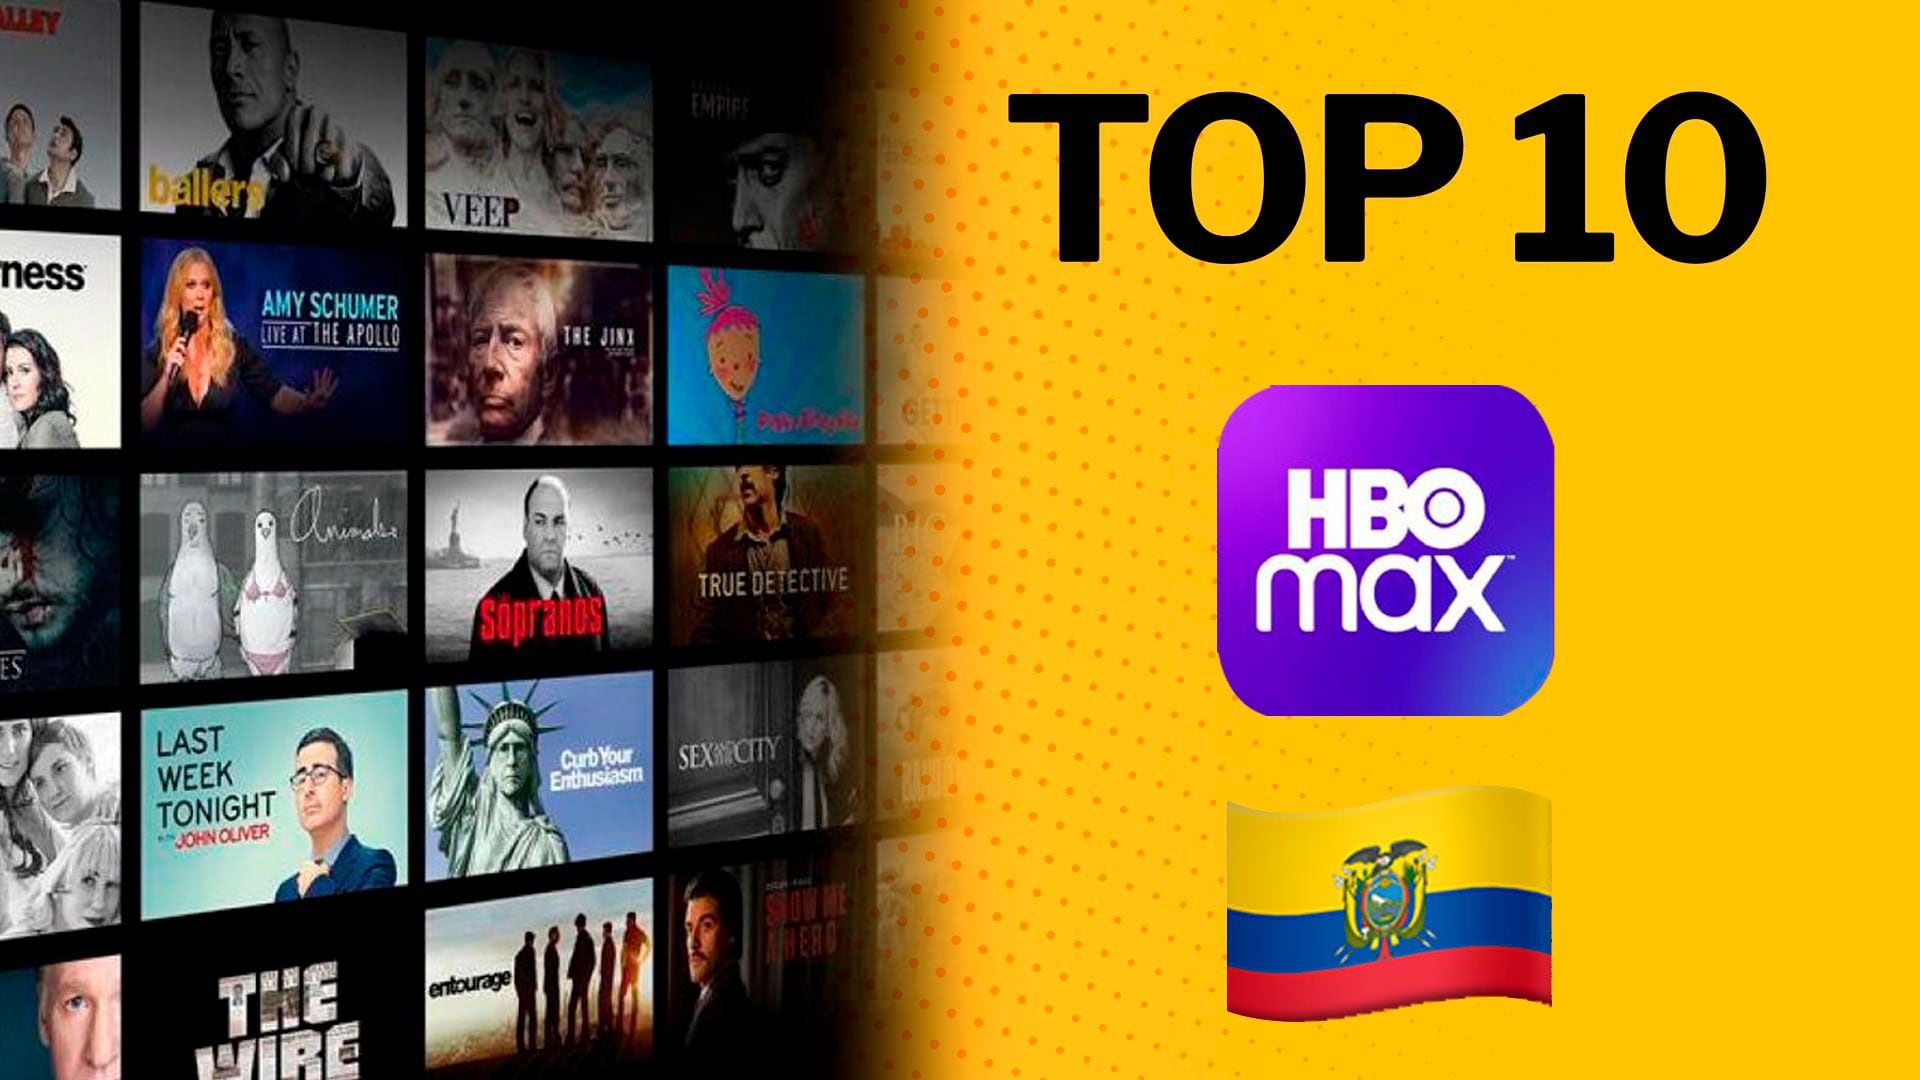 HBO Max - #SeráQueEsAmor en primer lugar de este #Top10 solo puede